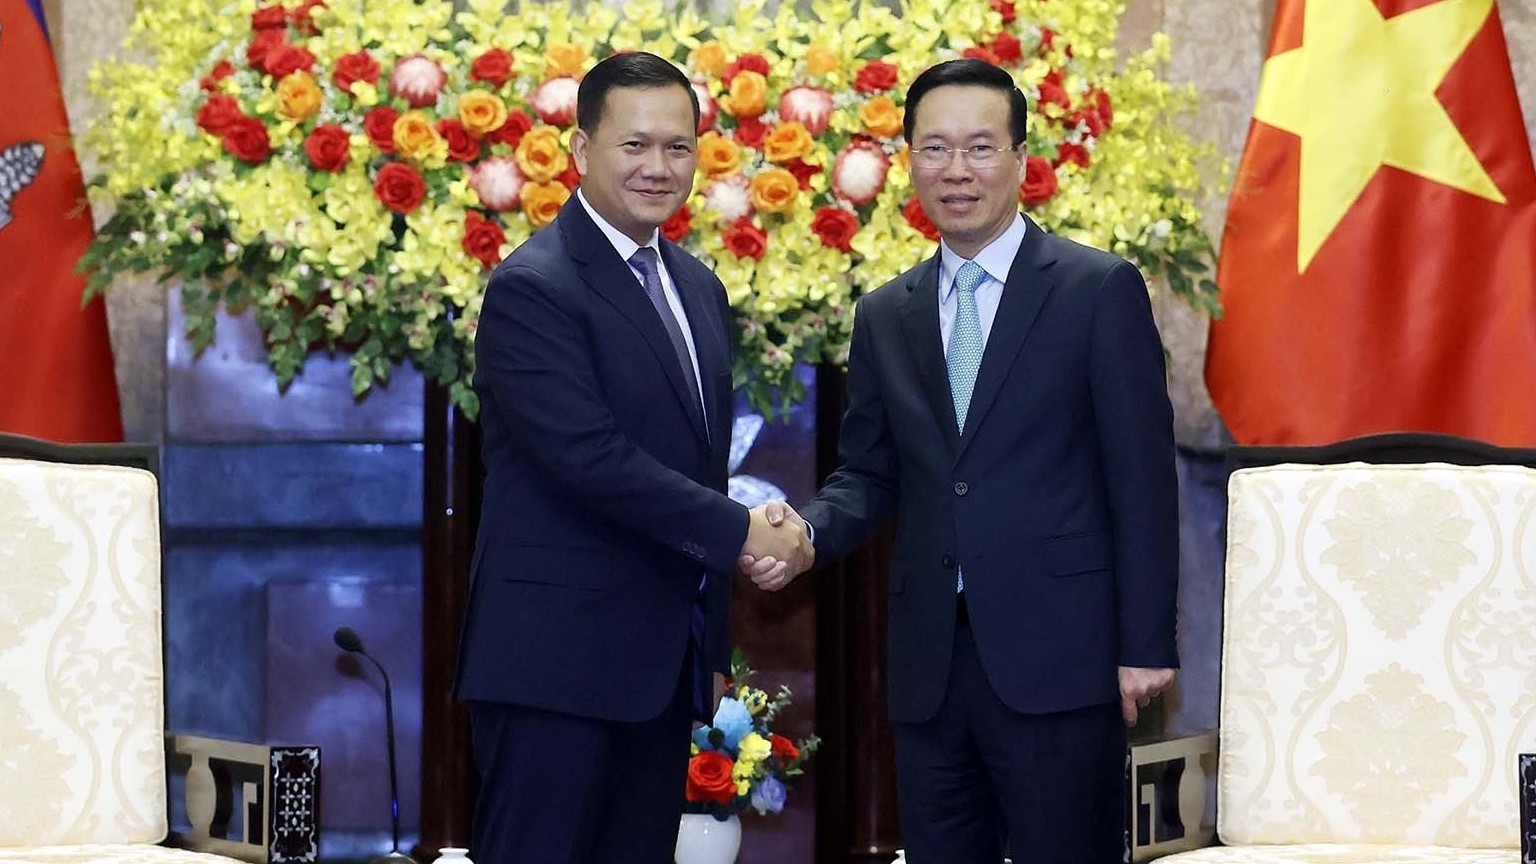 Việt Nam luôn coi trọng và mong muốn không ngừng củng cố quan hệ hữu nghị và hợp tác toàn diện với Campuchia